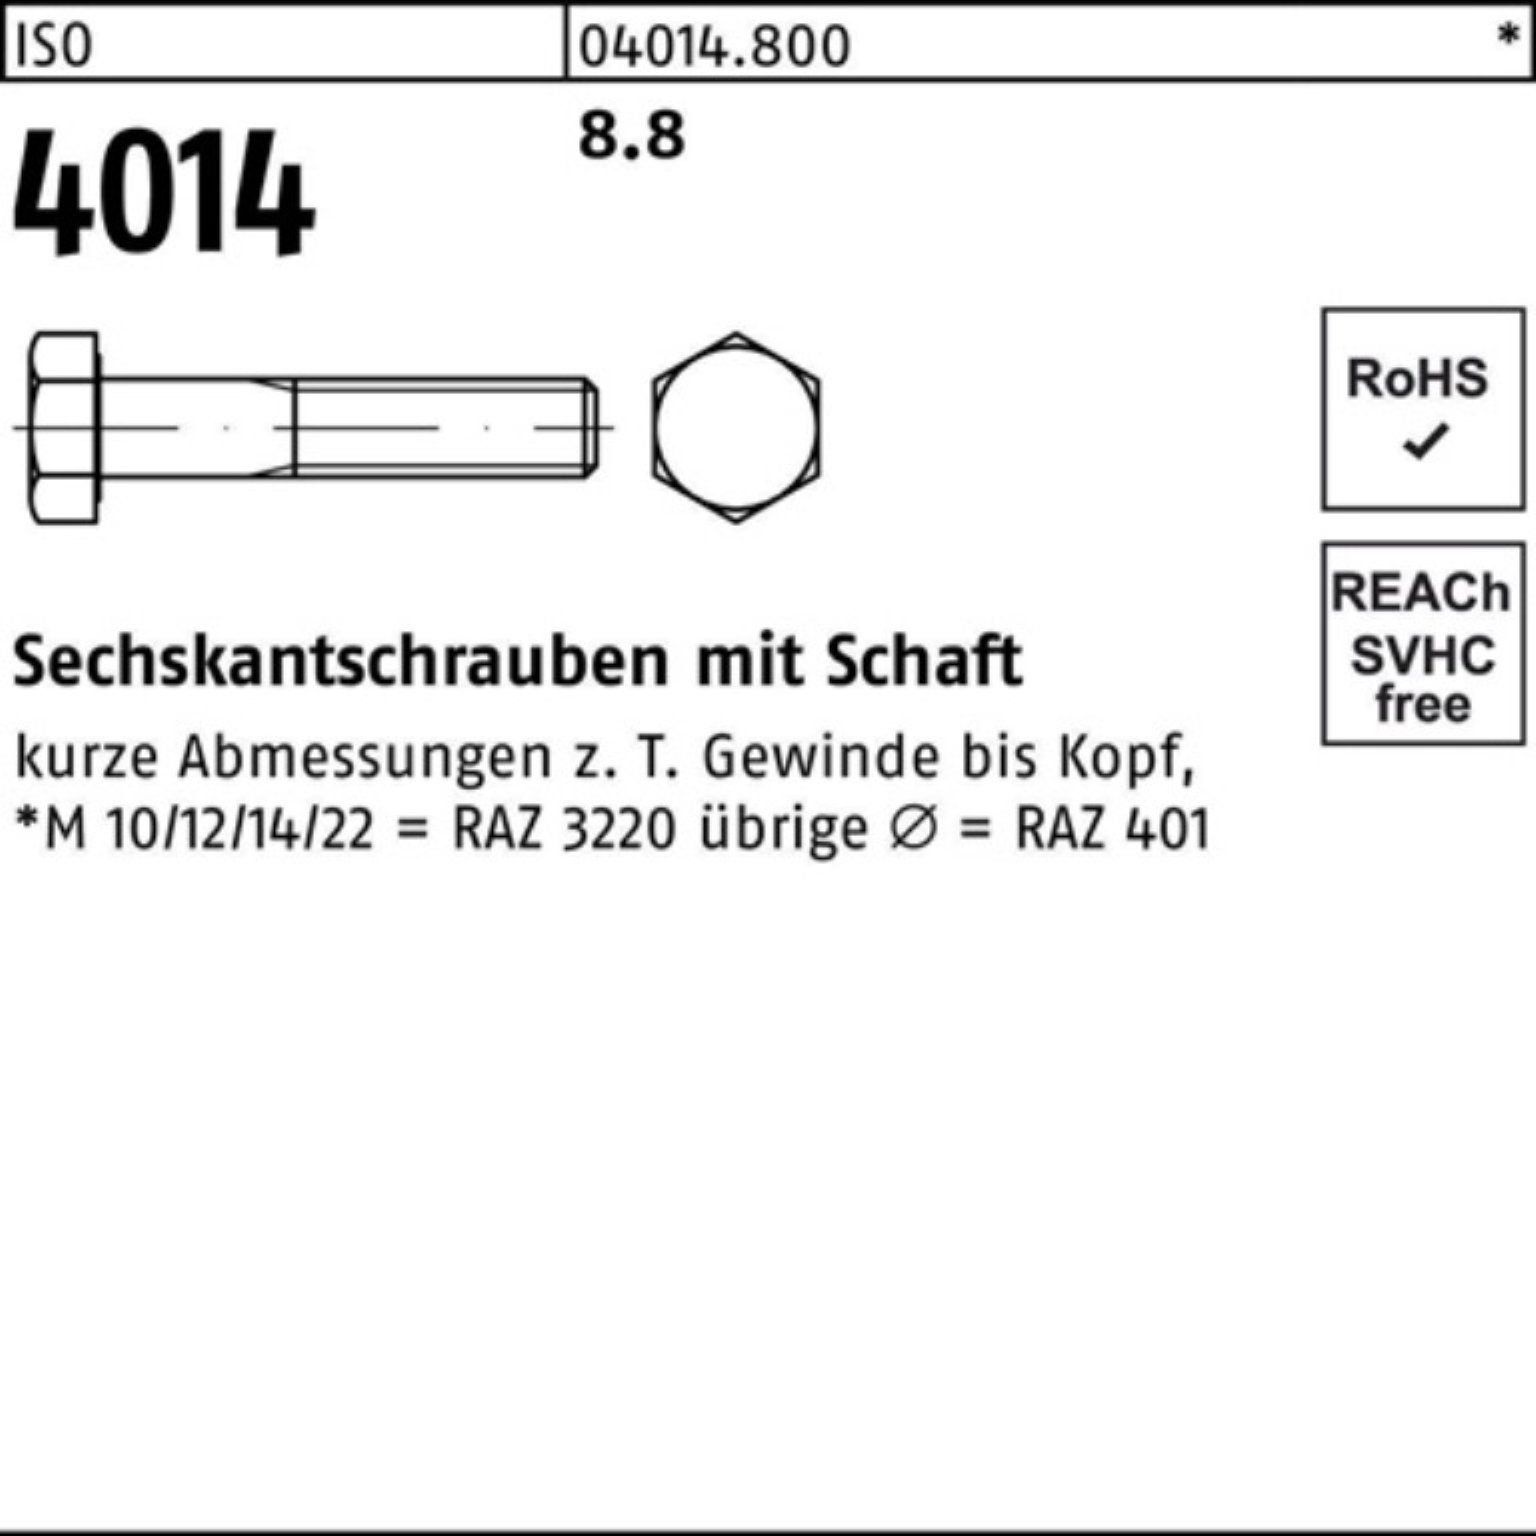 Bufab Sechskantschraube 100er 150 8.8 Schaft ISO Stück 1 Sechskantschraube Pack 4014 ISO M39x